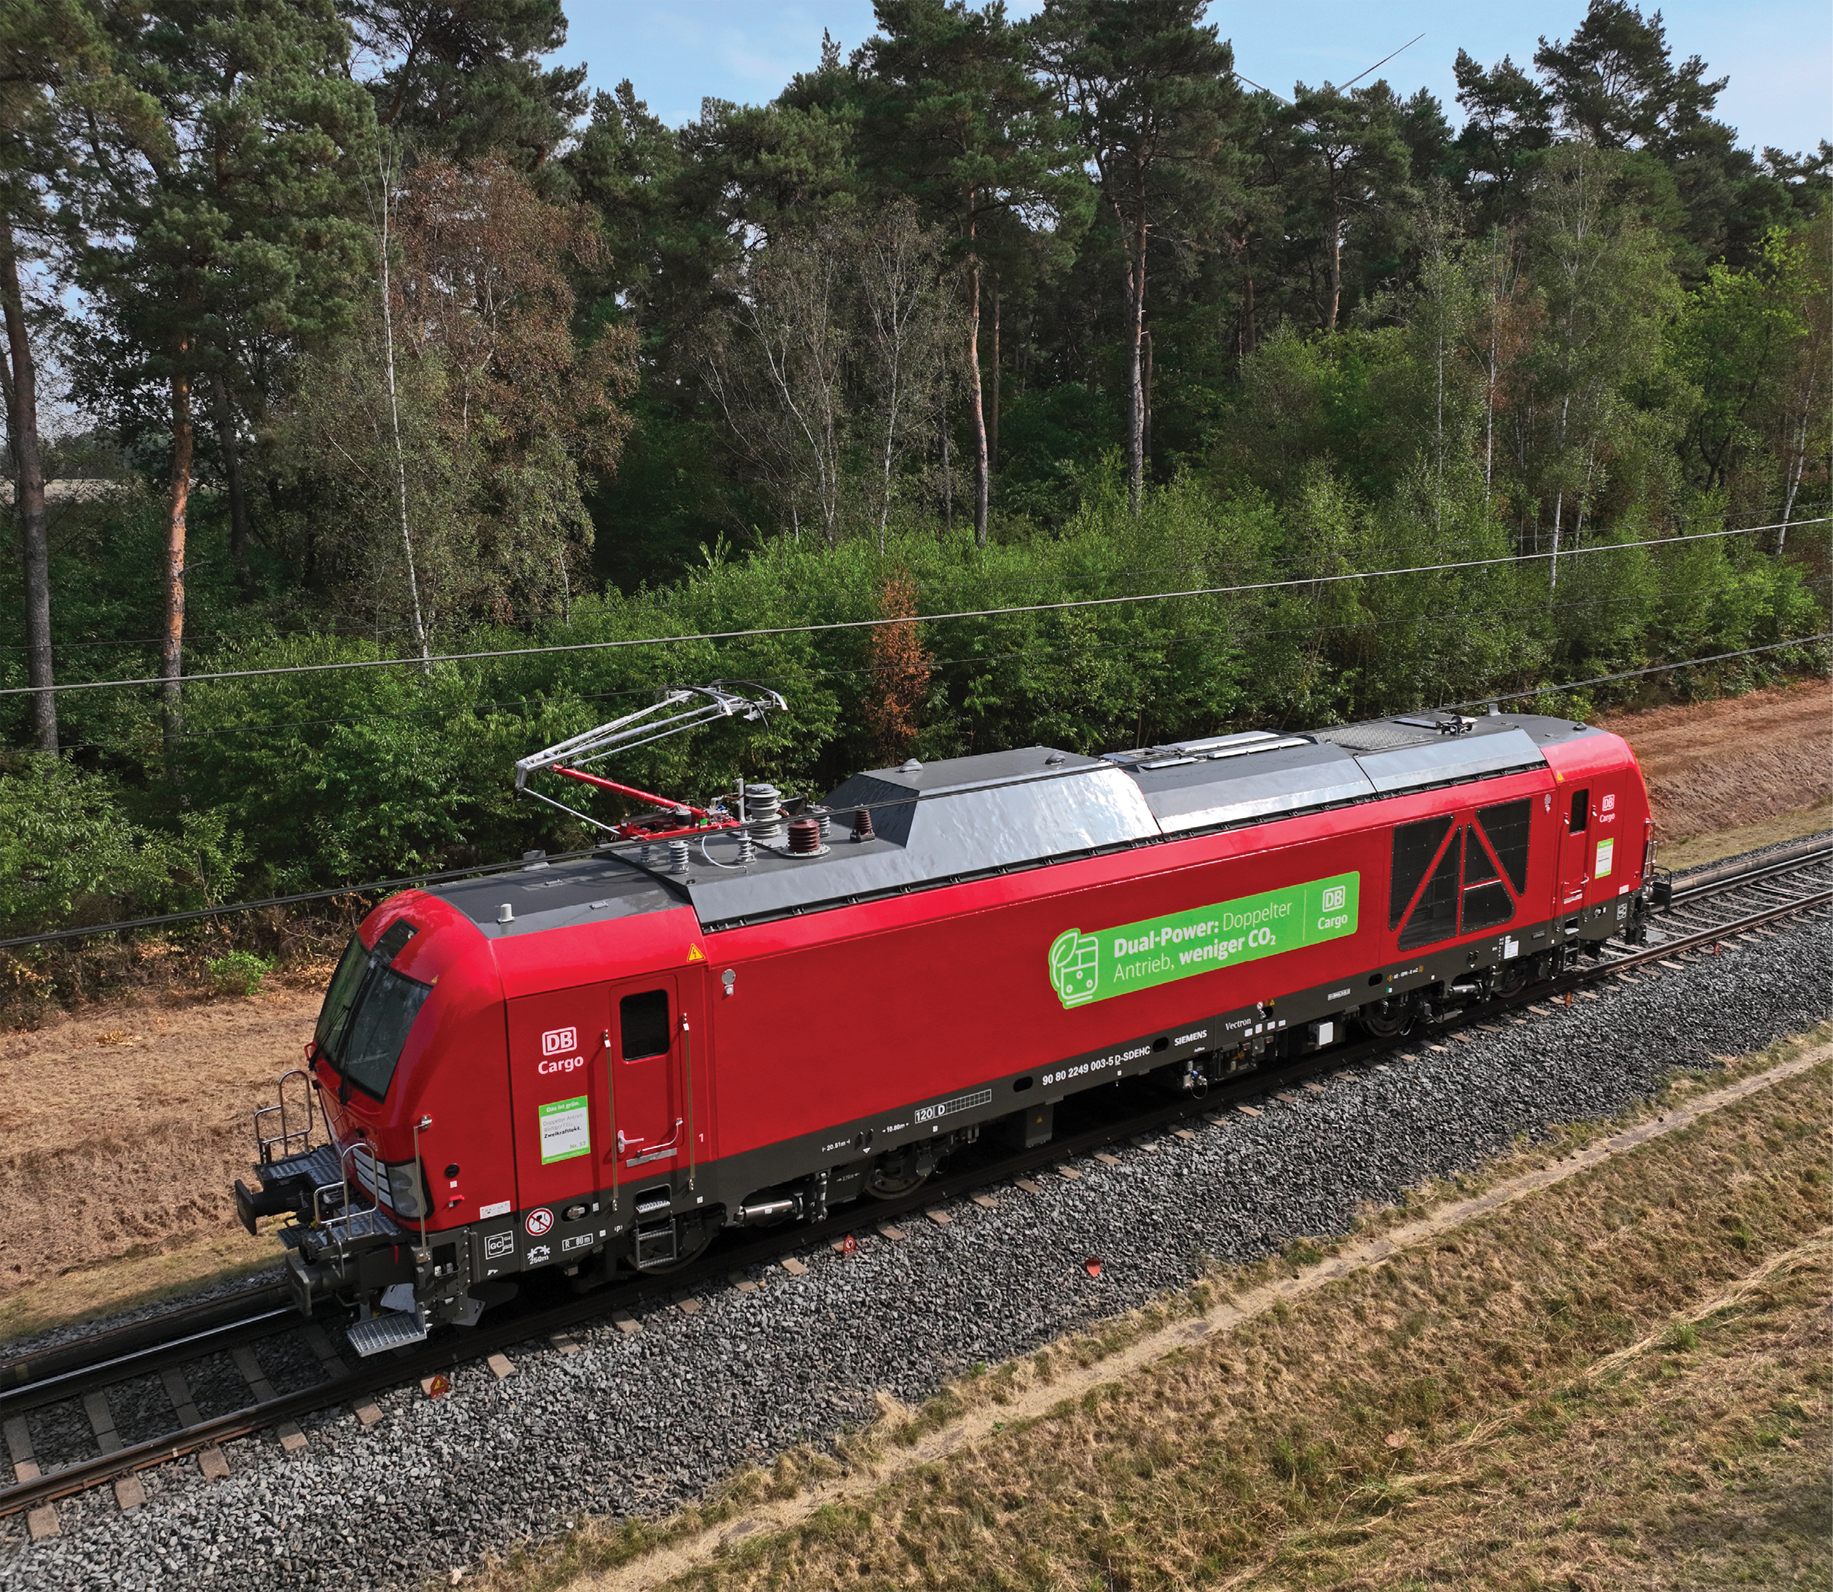 Triebfahrzeugbaureihe 2 249: Zweikraftlokomotiven des Herstellers Siemens vom Typ Vectron Dual Mode fahren sowohl elektrisch als auch mit Dieselmotor